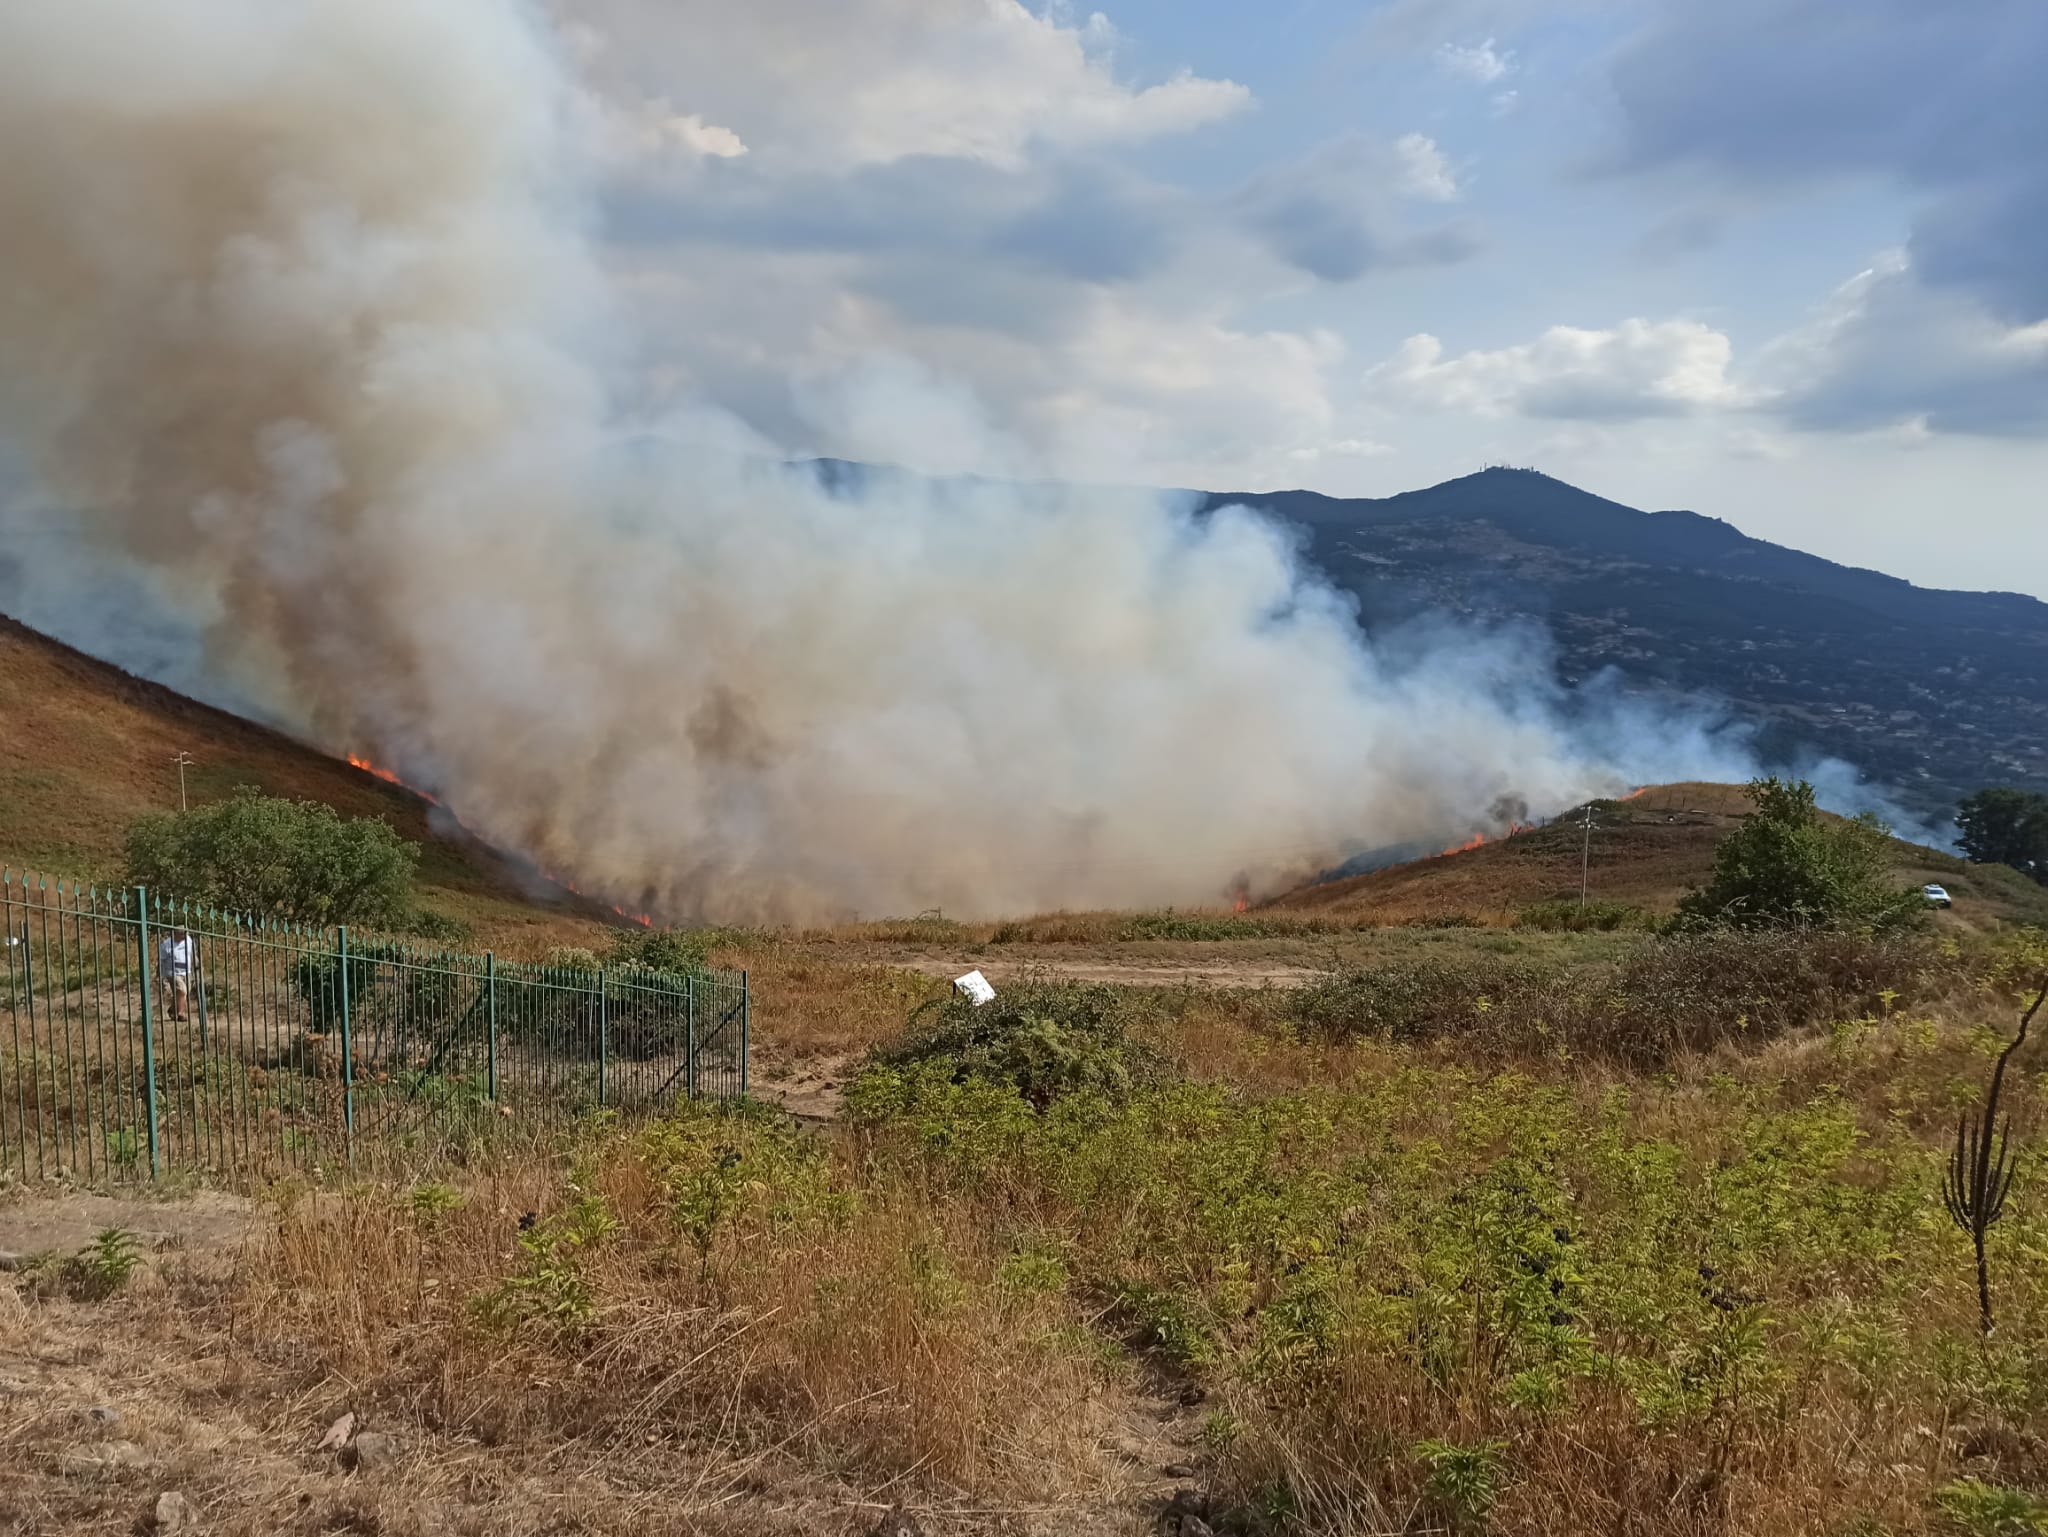 FOTO/VIDEO - Incendio sul Monte Tuscolo, versante di Grottaferrata. Sul  posto uomini e mezzi. Piromani scatenati